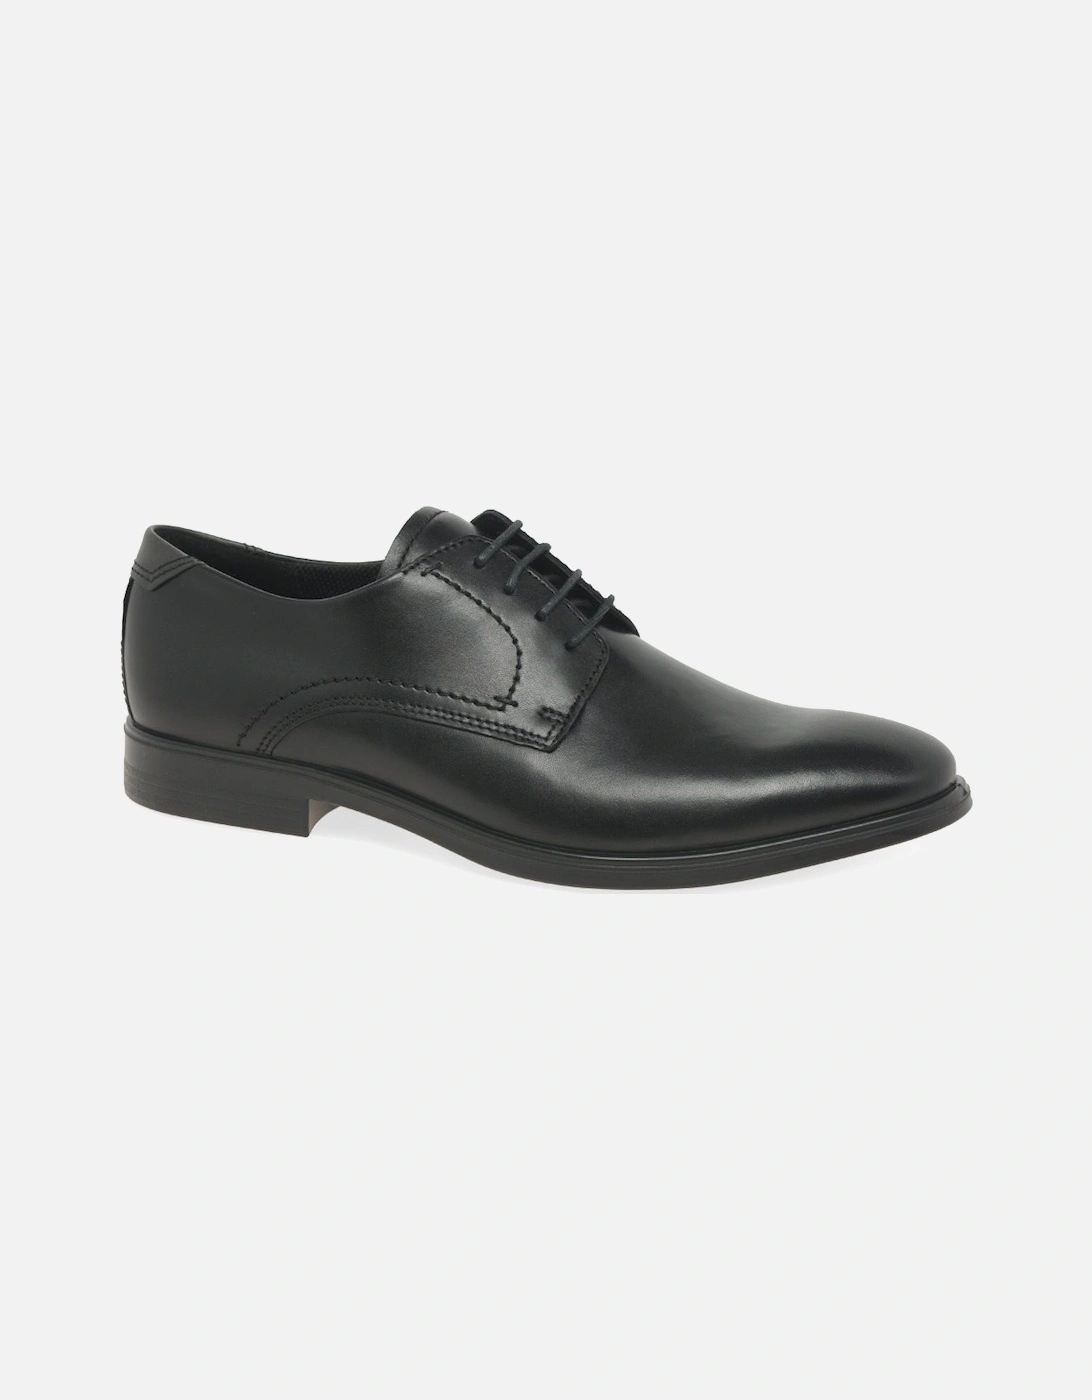  Men's Melbourne Mens Formal Lace Up Shoes - Black Lea - Size: 7.5